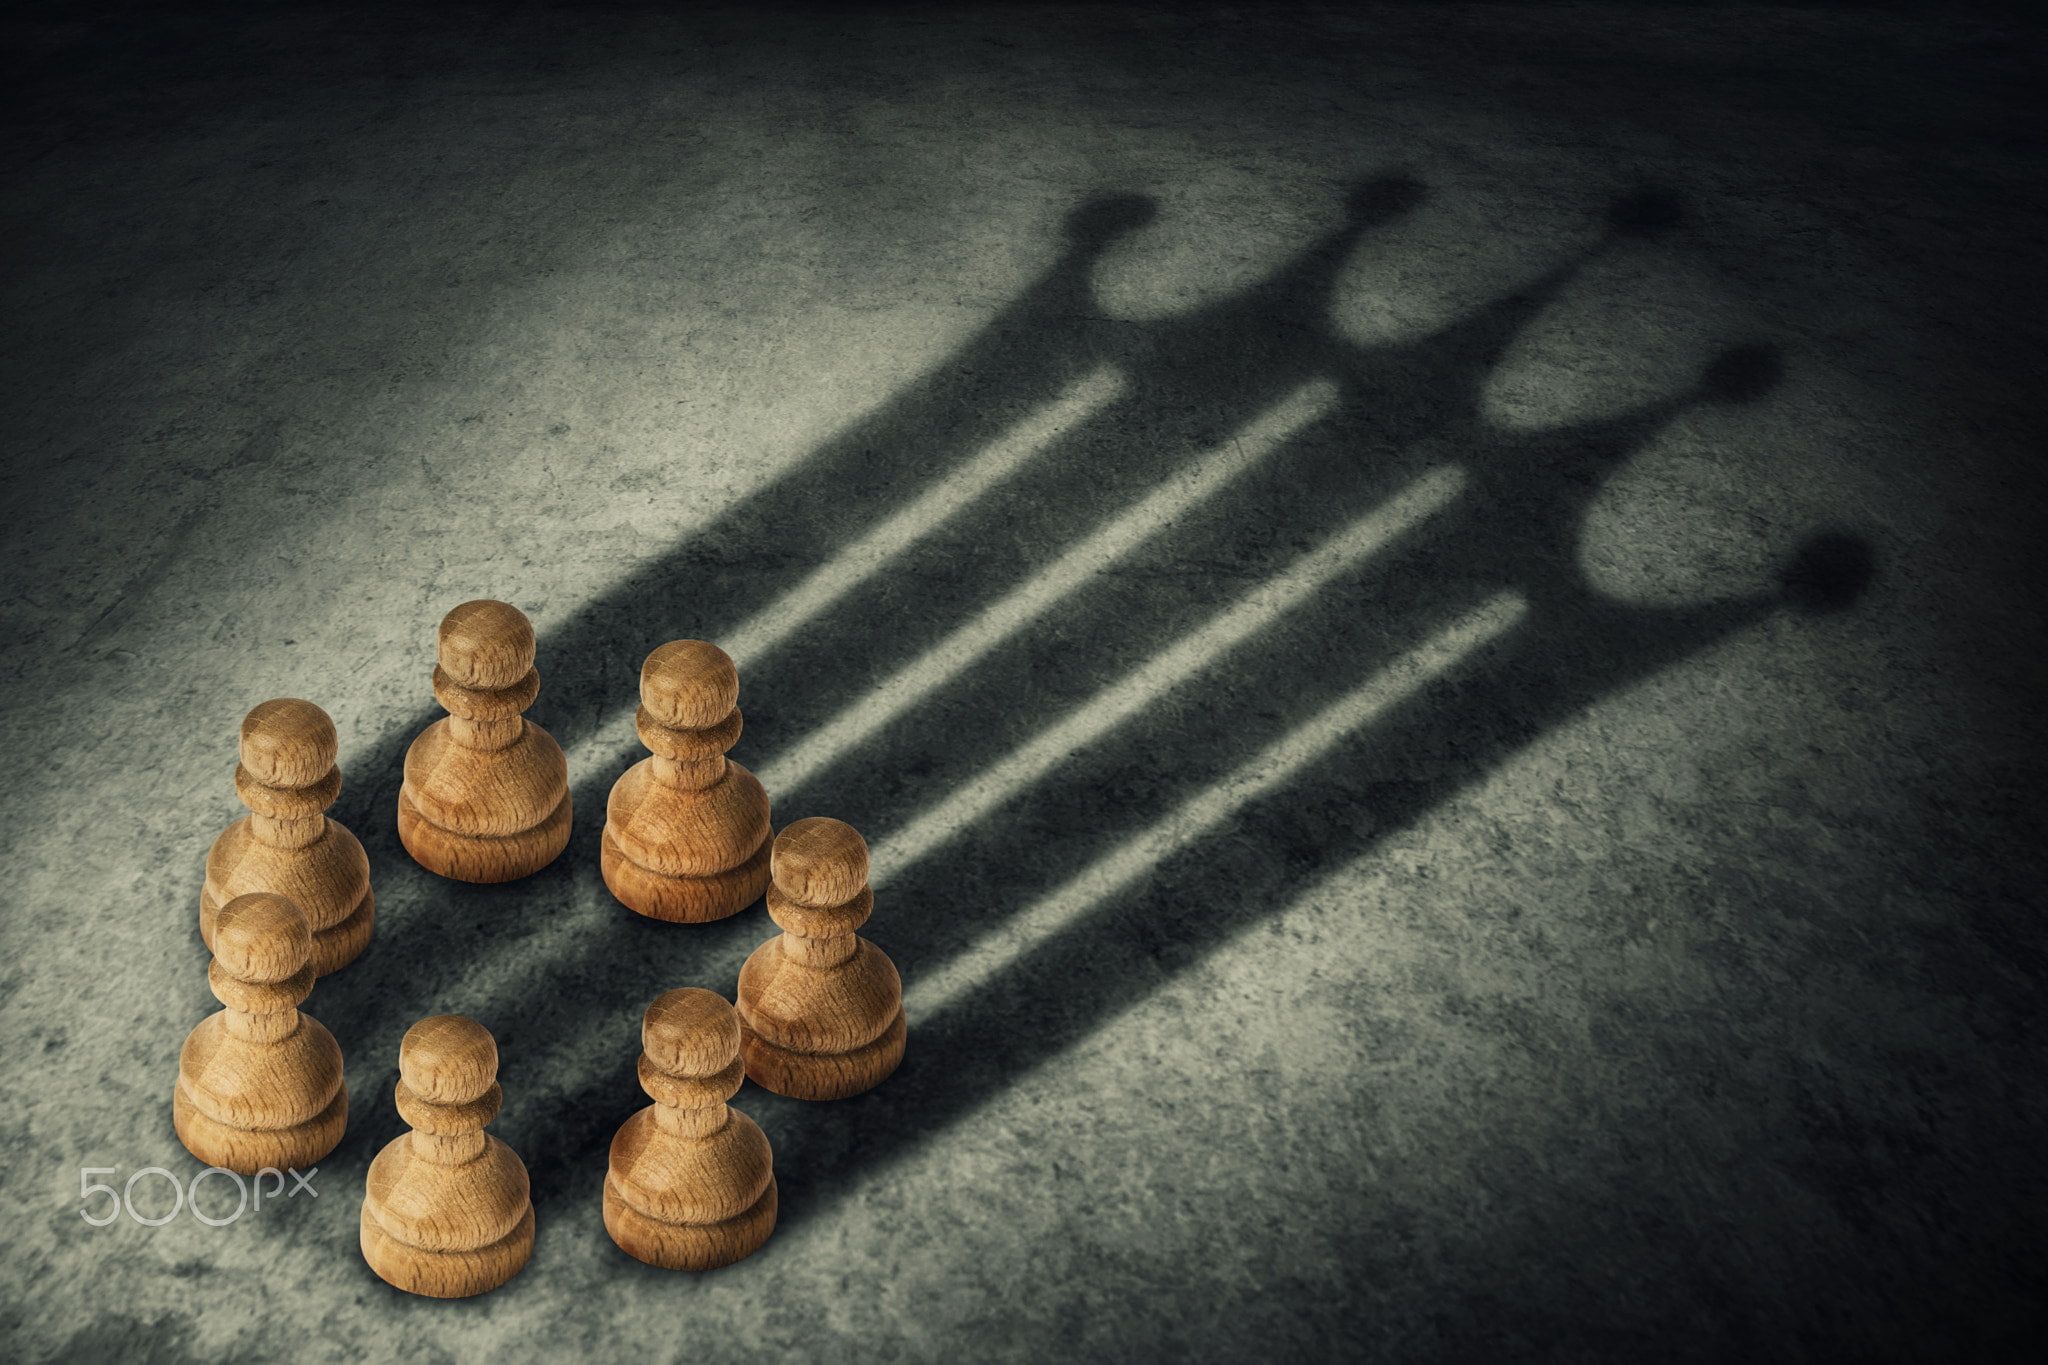 pawns px #shadow #chess P #wallpaper #hdwallpaper #desktop. Chess board, Chess queen, Chess